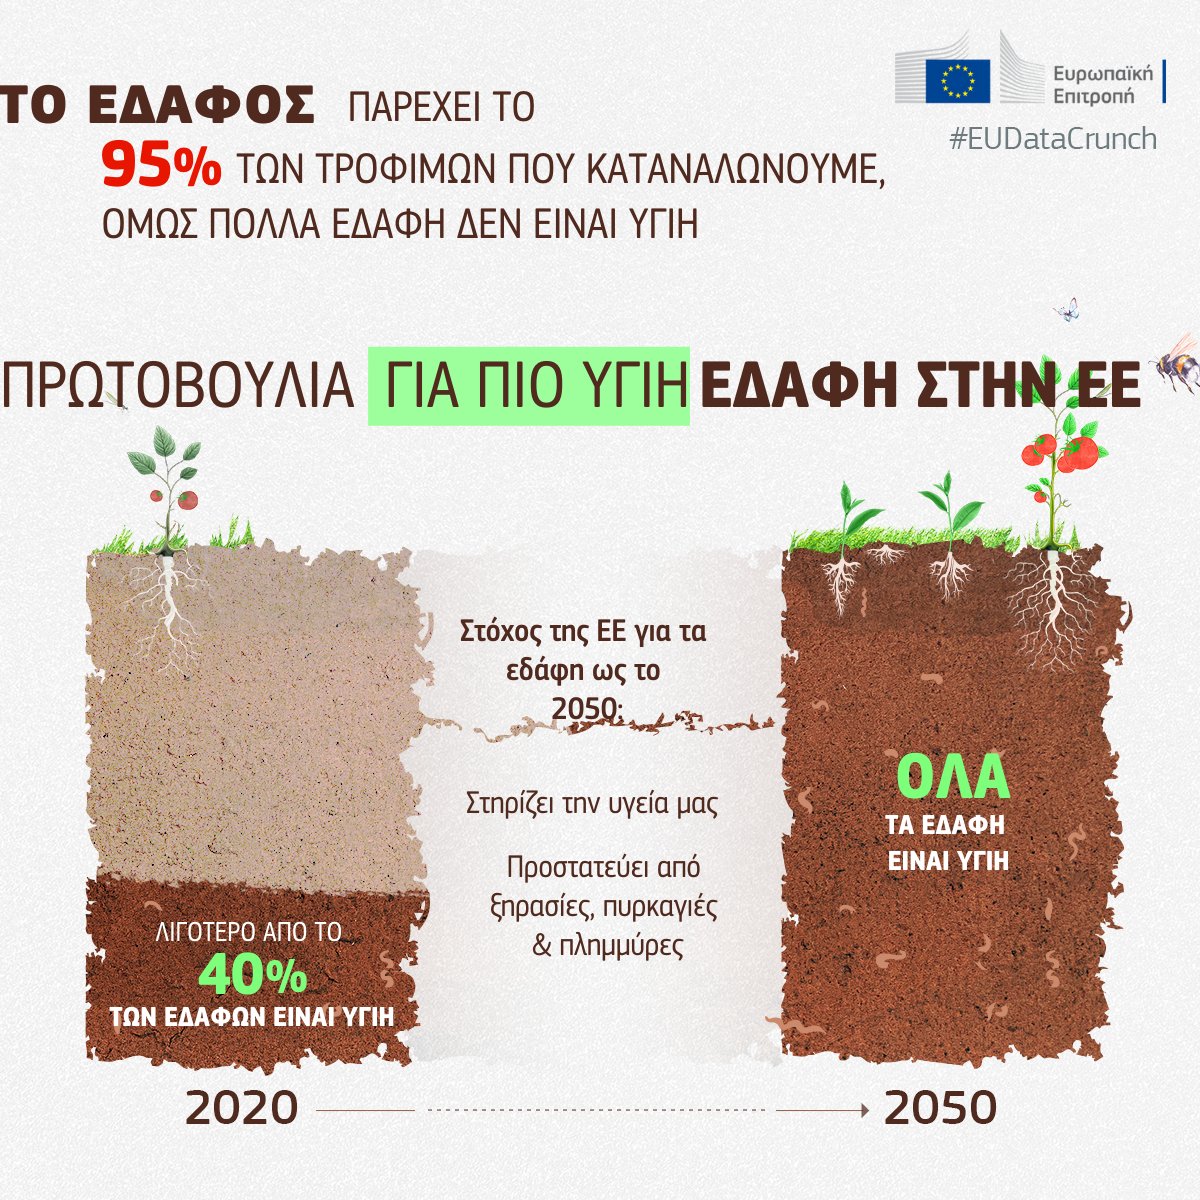 Το έδαφος παρέχει το 95% των τροφίμων που καταναλώνουμε, όμως πολλά εδάφη δεν είναι υγιή

Στόχος μας είναι να εξασφαλίσουμε την καλή υγεία όλων των εδαφικών οικοσυστημάτων της ΕΕ ως το 2050. 

🔗 europa.eu/!PNRbBY

Δείτε περισσότερα στο #EUDataCrunch👇